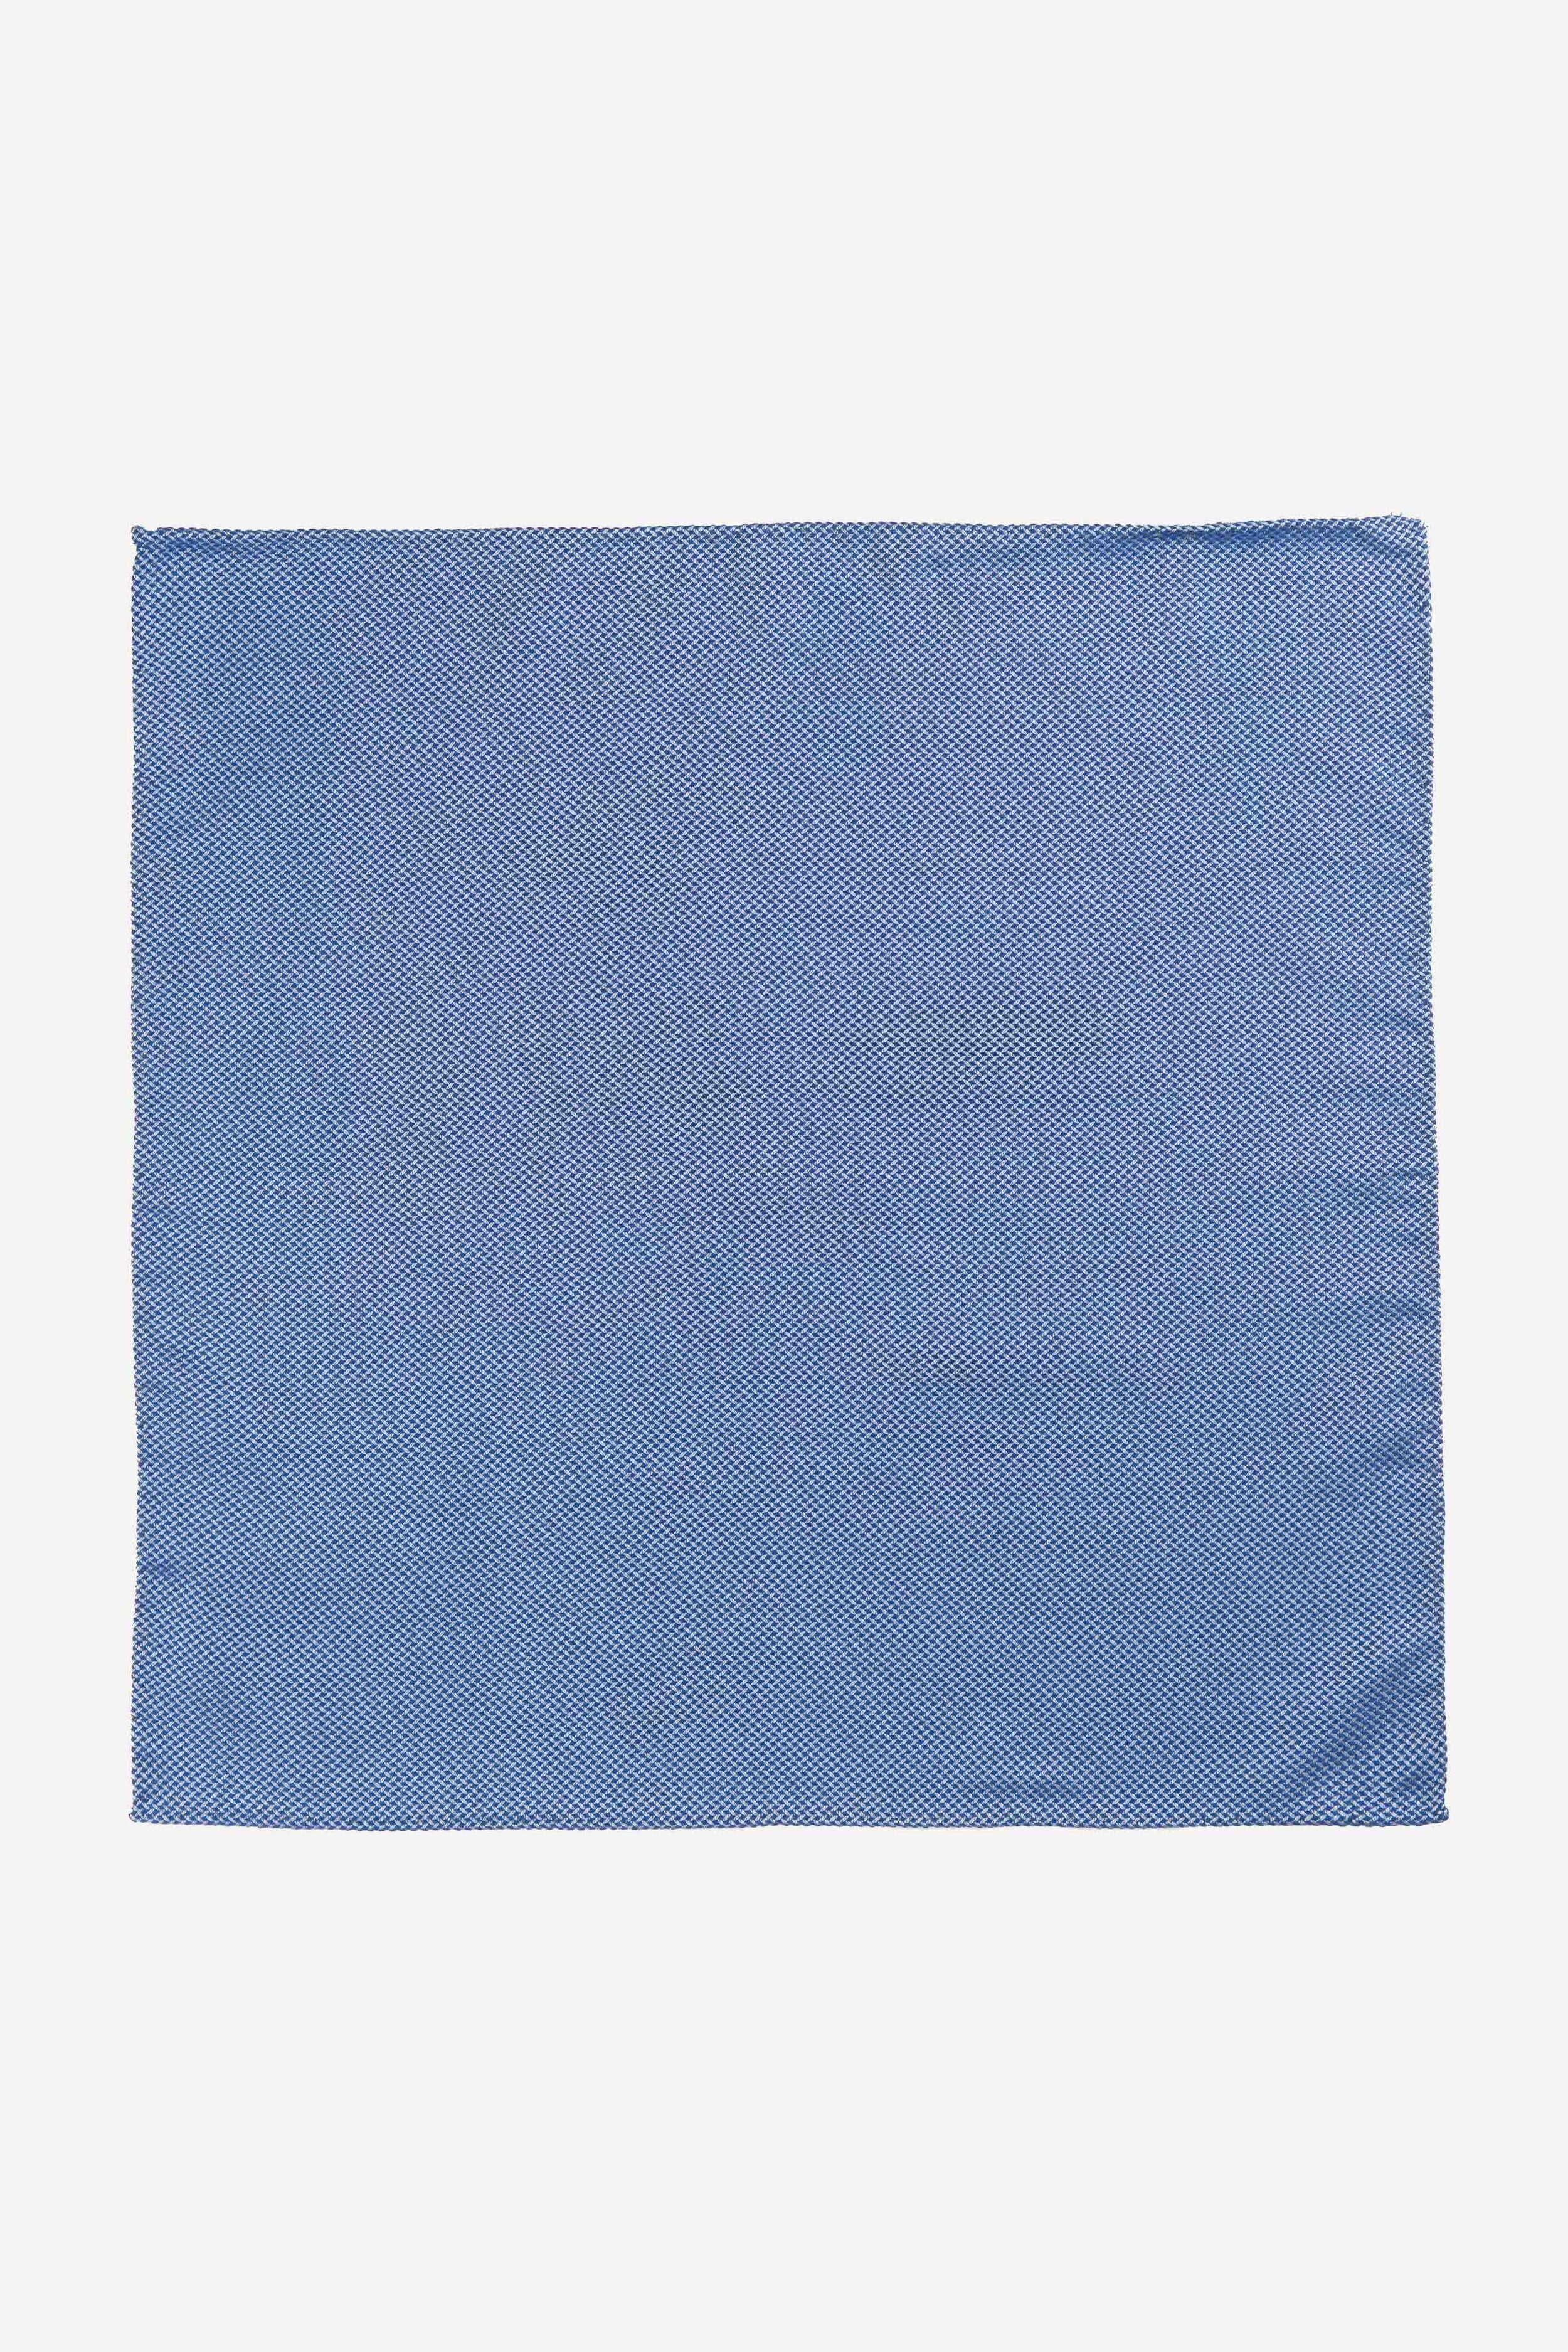 Blue patterned pocket-square - Royal blue